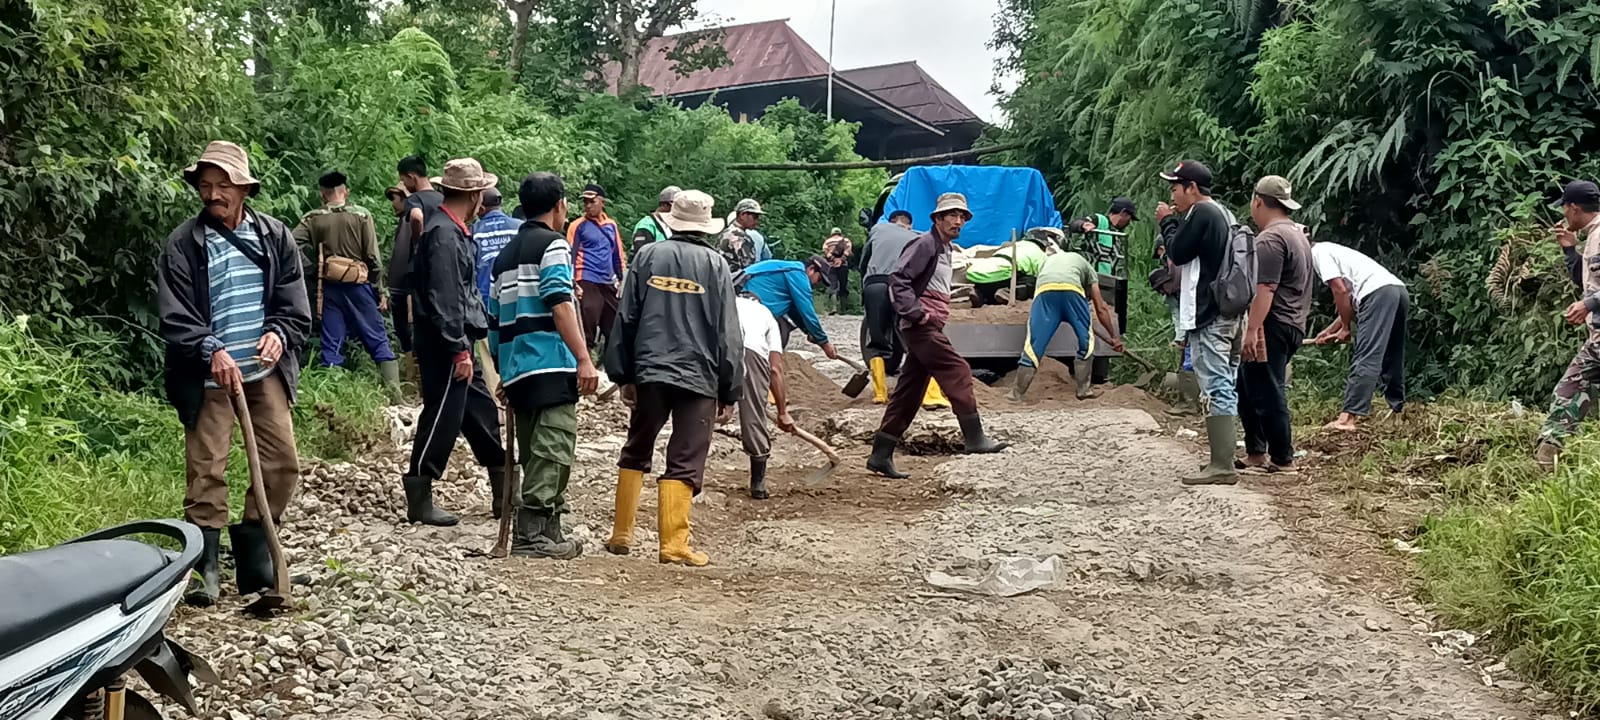 Kecewa Belum Ada Perhatian Pemerintah, Puluhan Masyarakat dari Tiga Desa di Semende Perbaiki Jalan Secara Swadaya